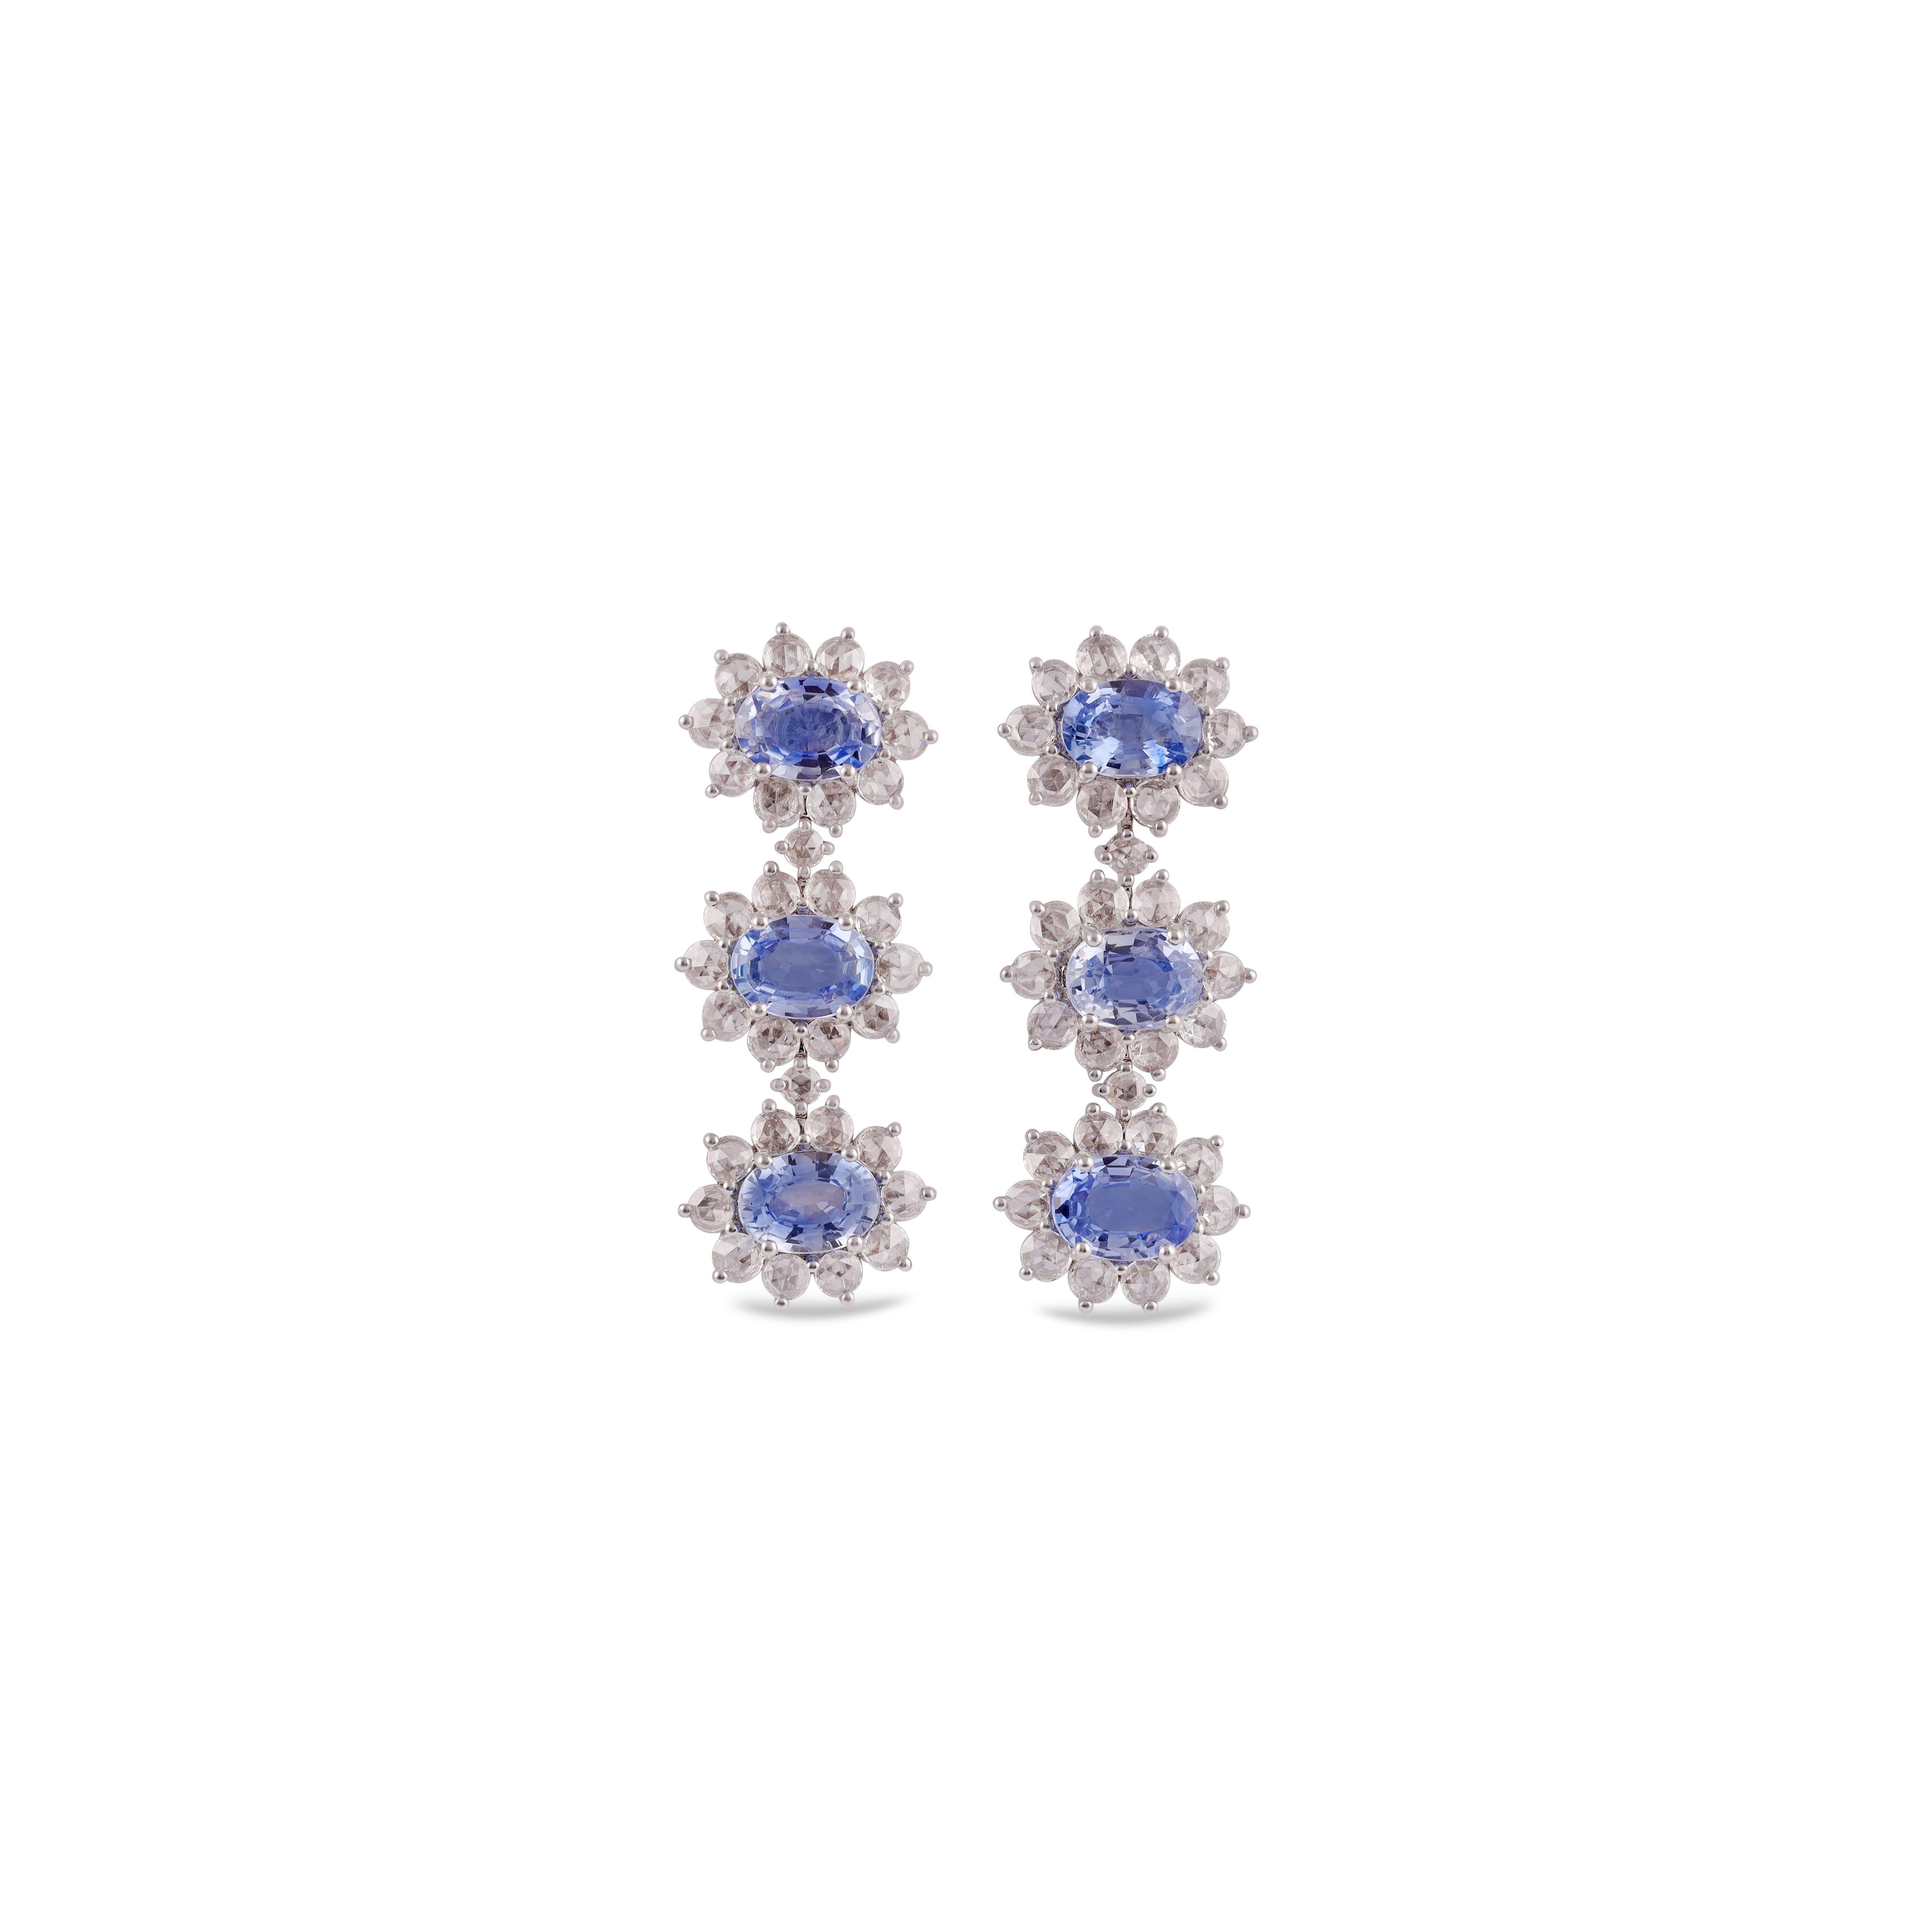 Diese exklusiven Ohrringe mit blauem Saphir und Diamanten bestehen aus 6 Stück Saphiren mit einem Gewicht von 5,24 Karat, umgeben von 64 Stück runden Diamanten.  von Diamanten Gewicht 1,73 Karat, Diese gesamte Ohrringe sind in 18 Karat Weißgold